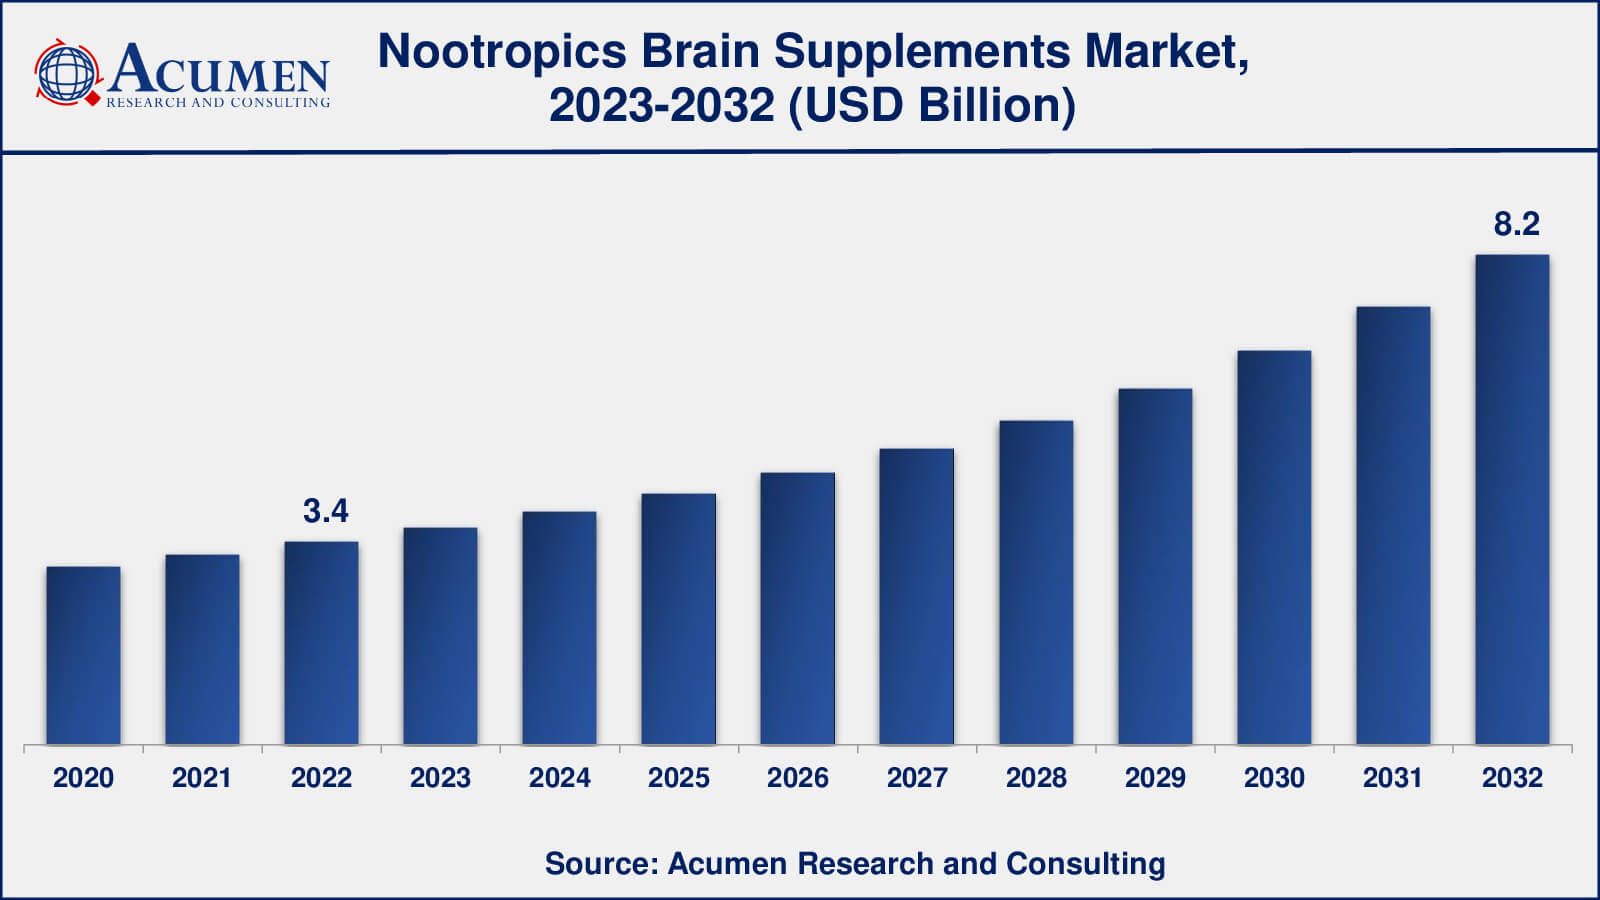 Nootropics Brain Supplements Market Analysis